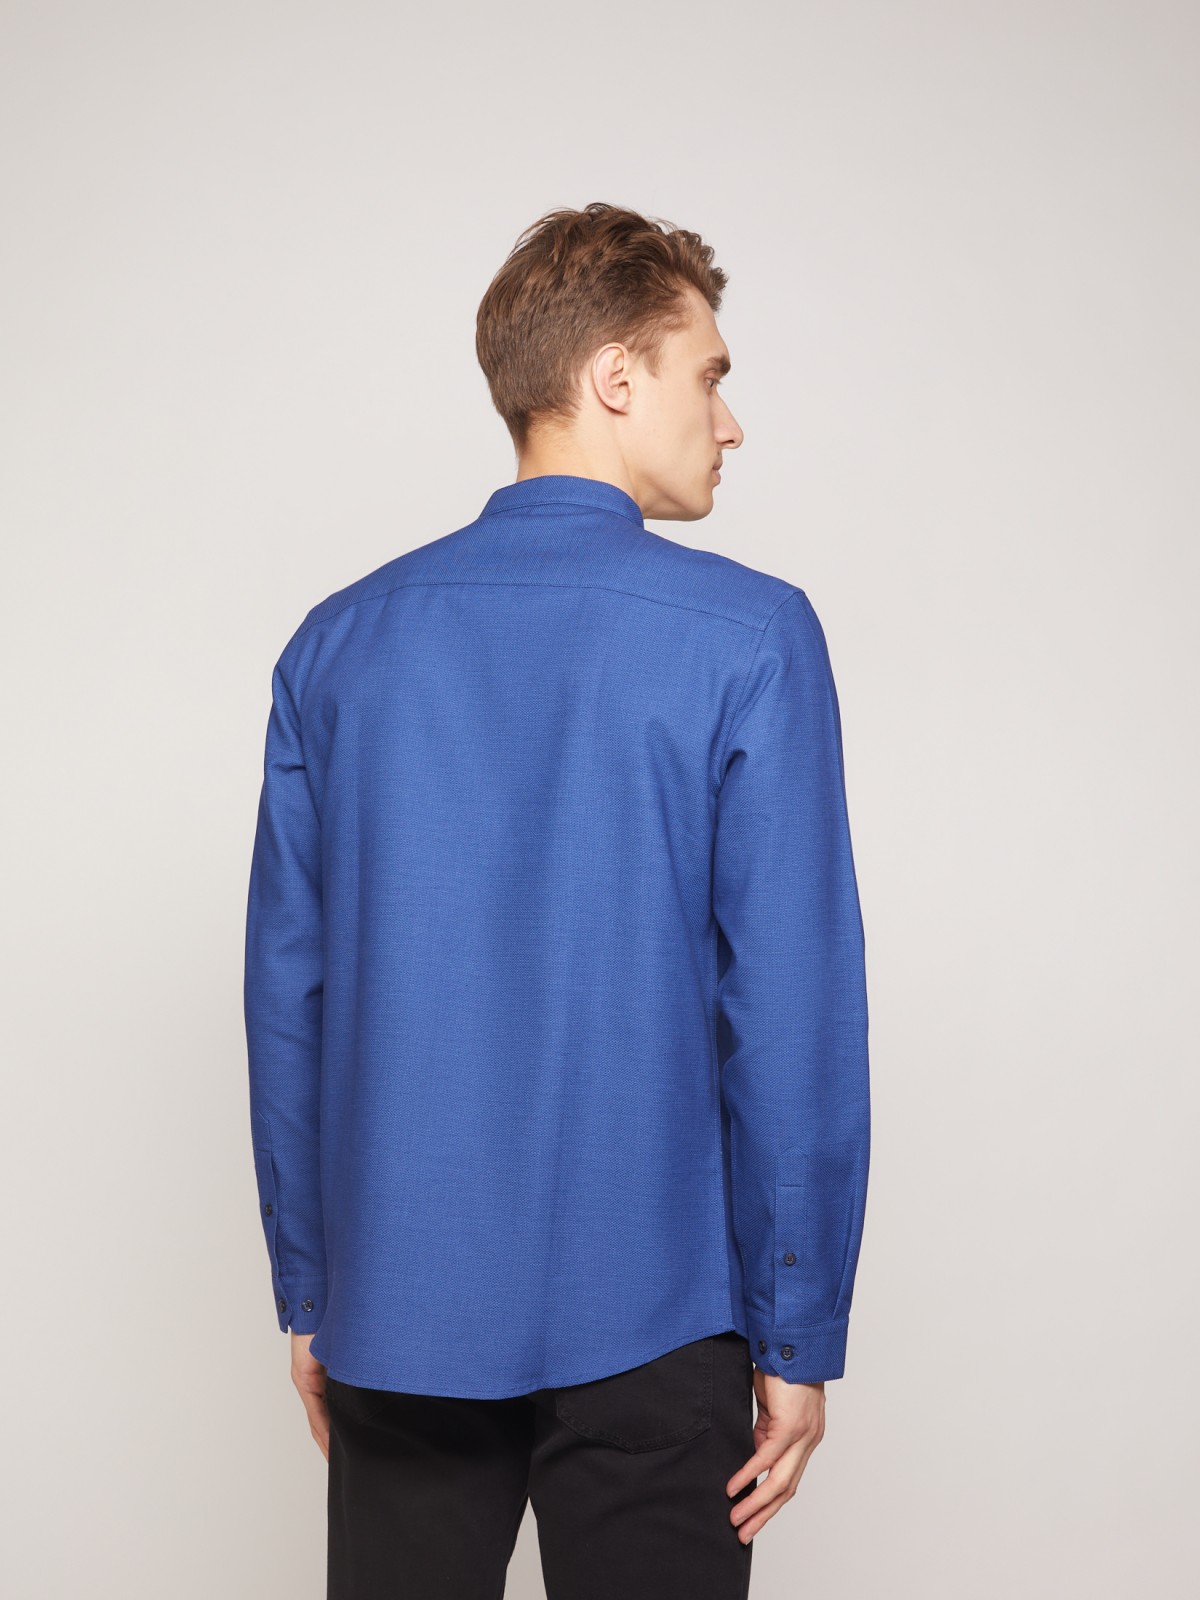 Рубашка с воротником-стойкой zolla 011322159053, цвет голубой, размер S - фото 6